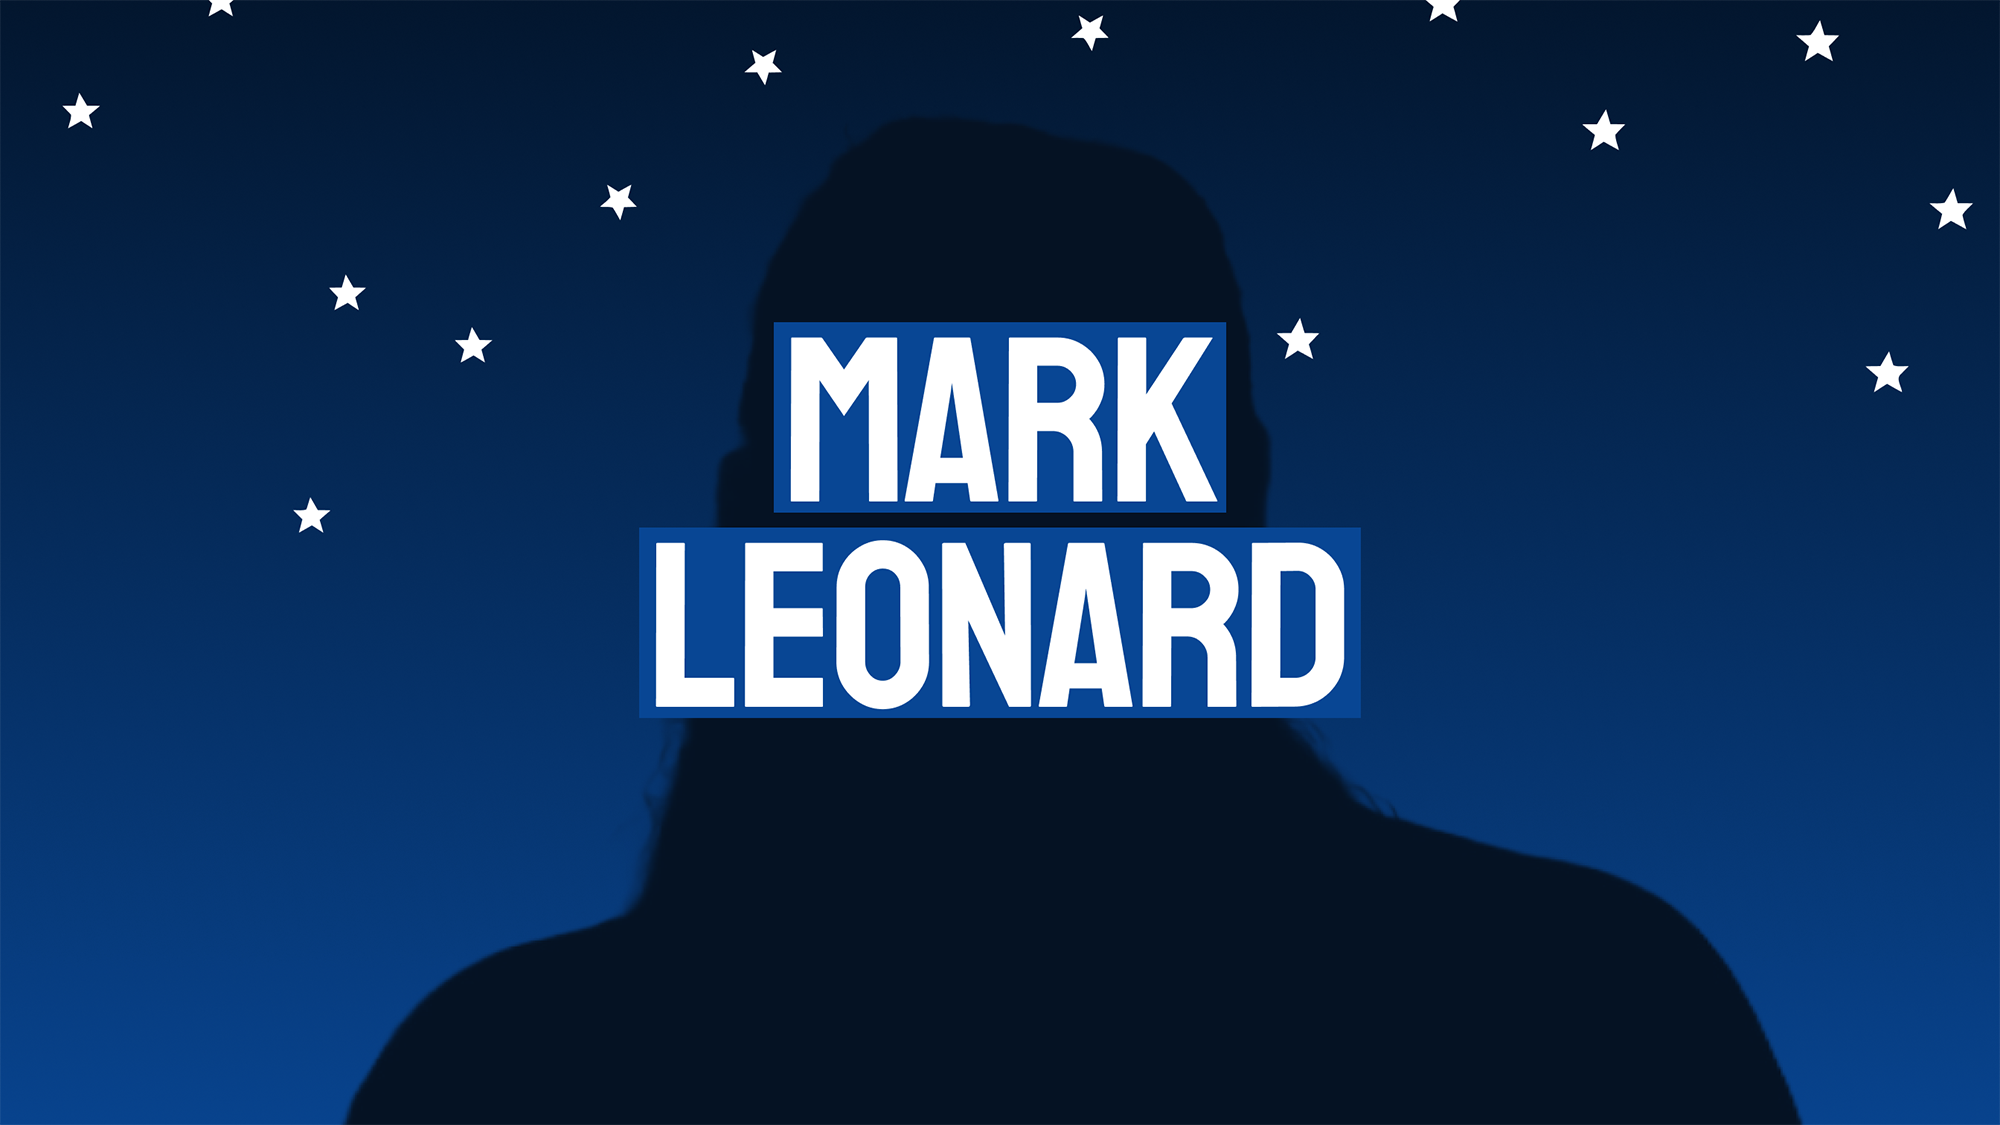 Mark Leonard - The Brain Behind Constellation Software $CSU